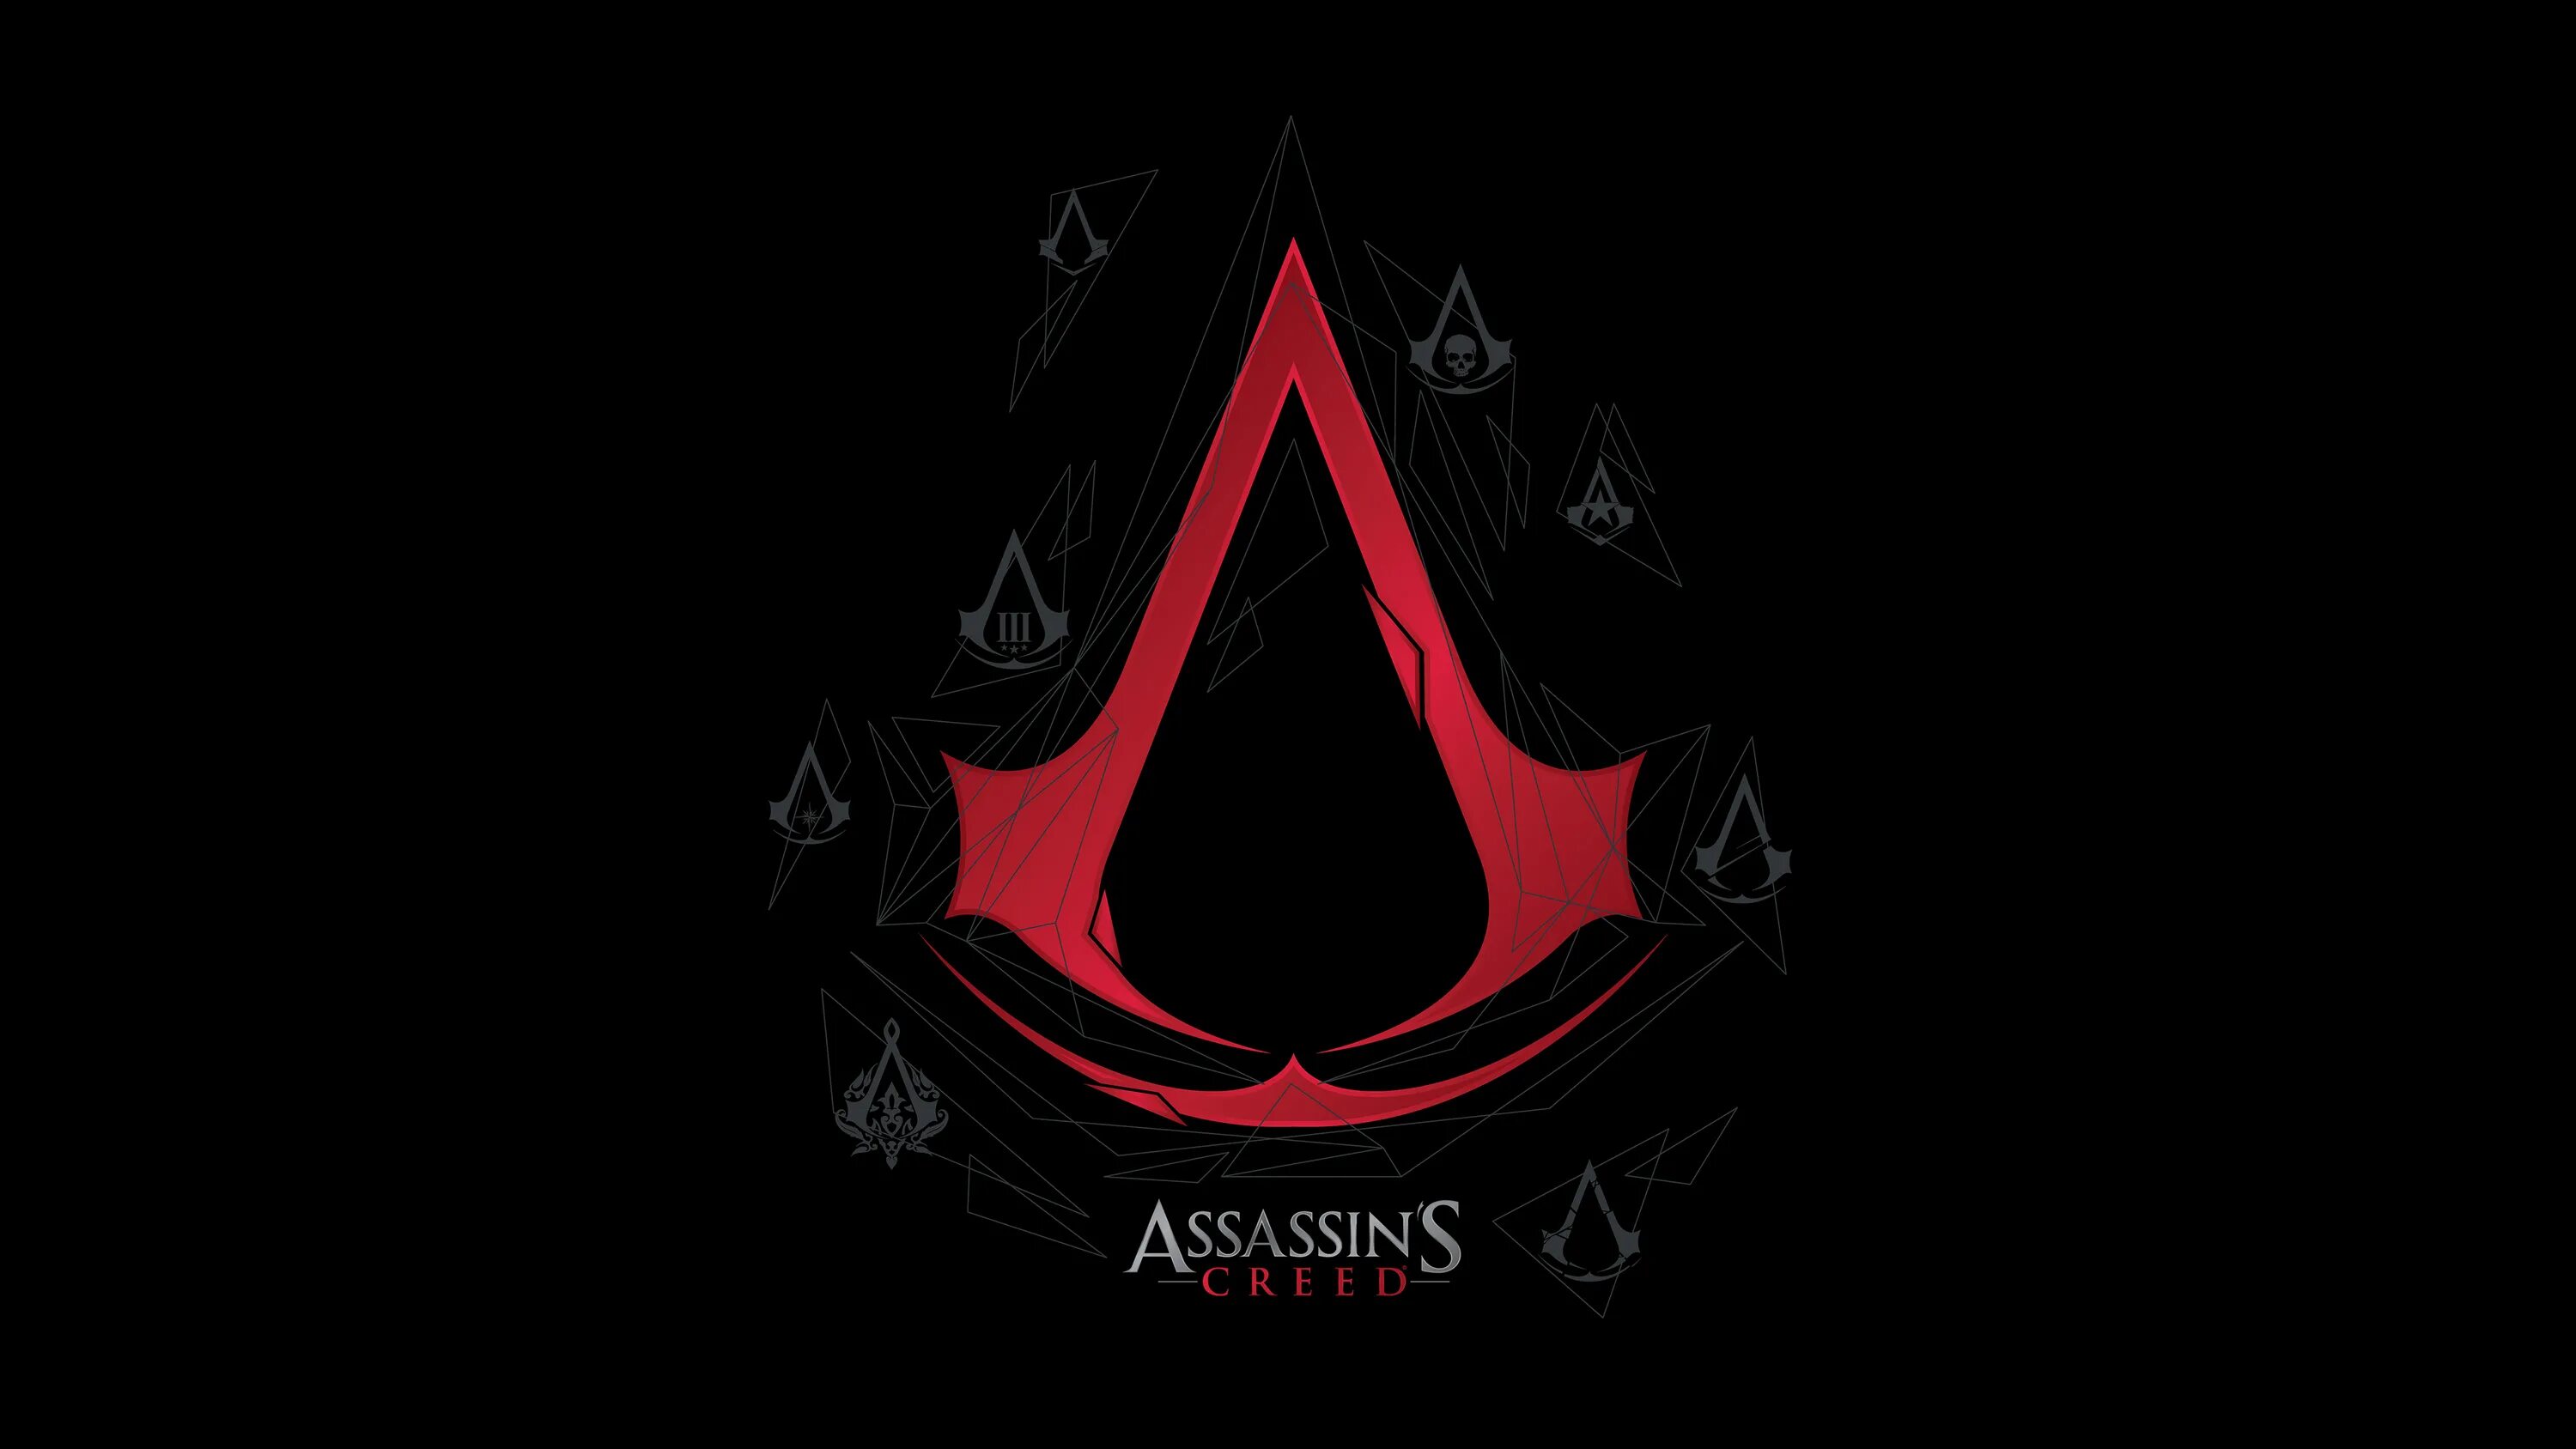 128 1024 1024 8. Ассасин Крид знак. Assassins Creed знак ассасинов. Ассасин Крид 4 знак. Assassin's Creed логотип.